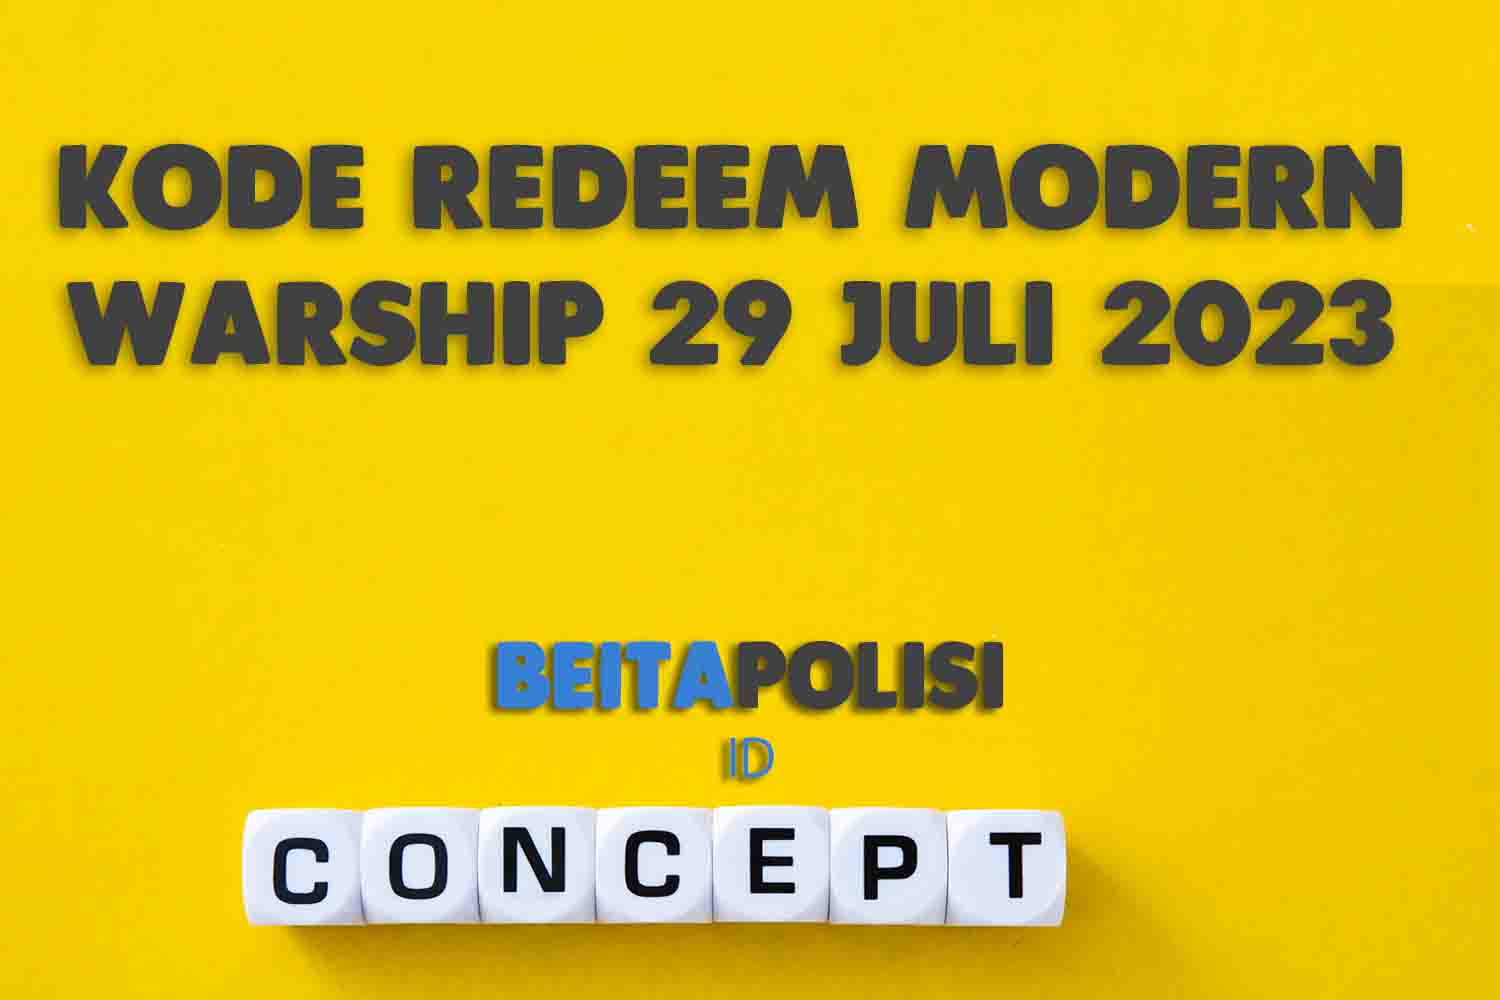 Kode Redeem Modern Warship 29 Juli 2023 Yang Masih Aktif